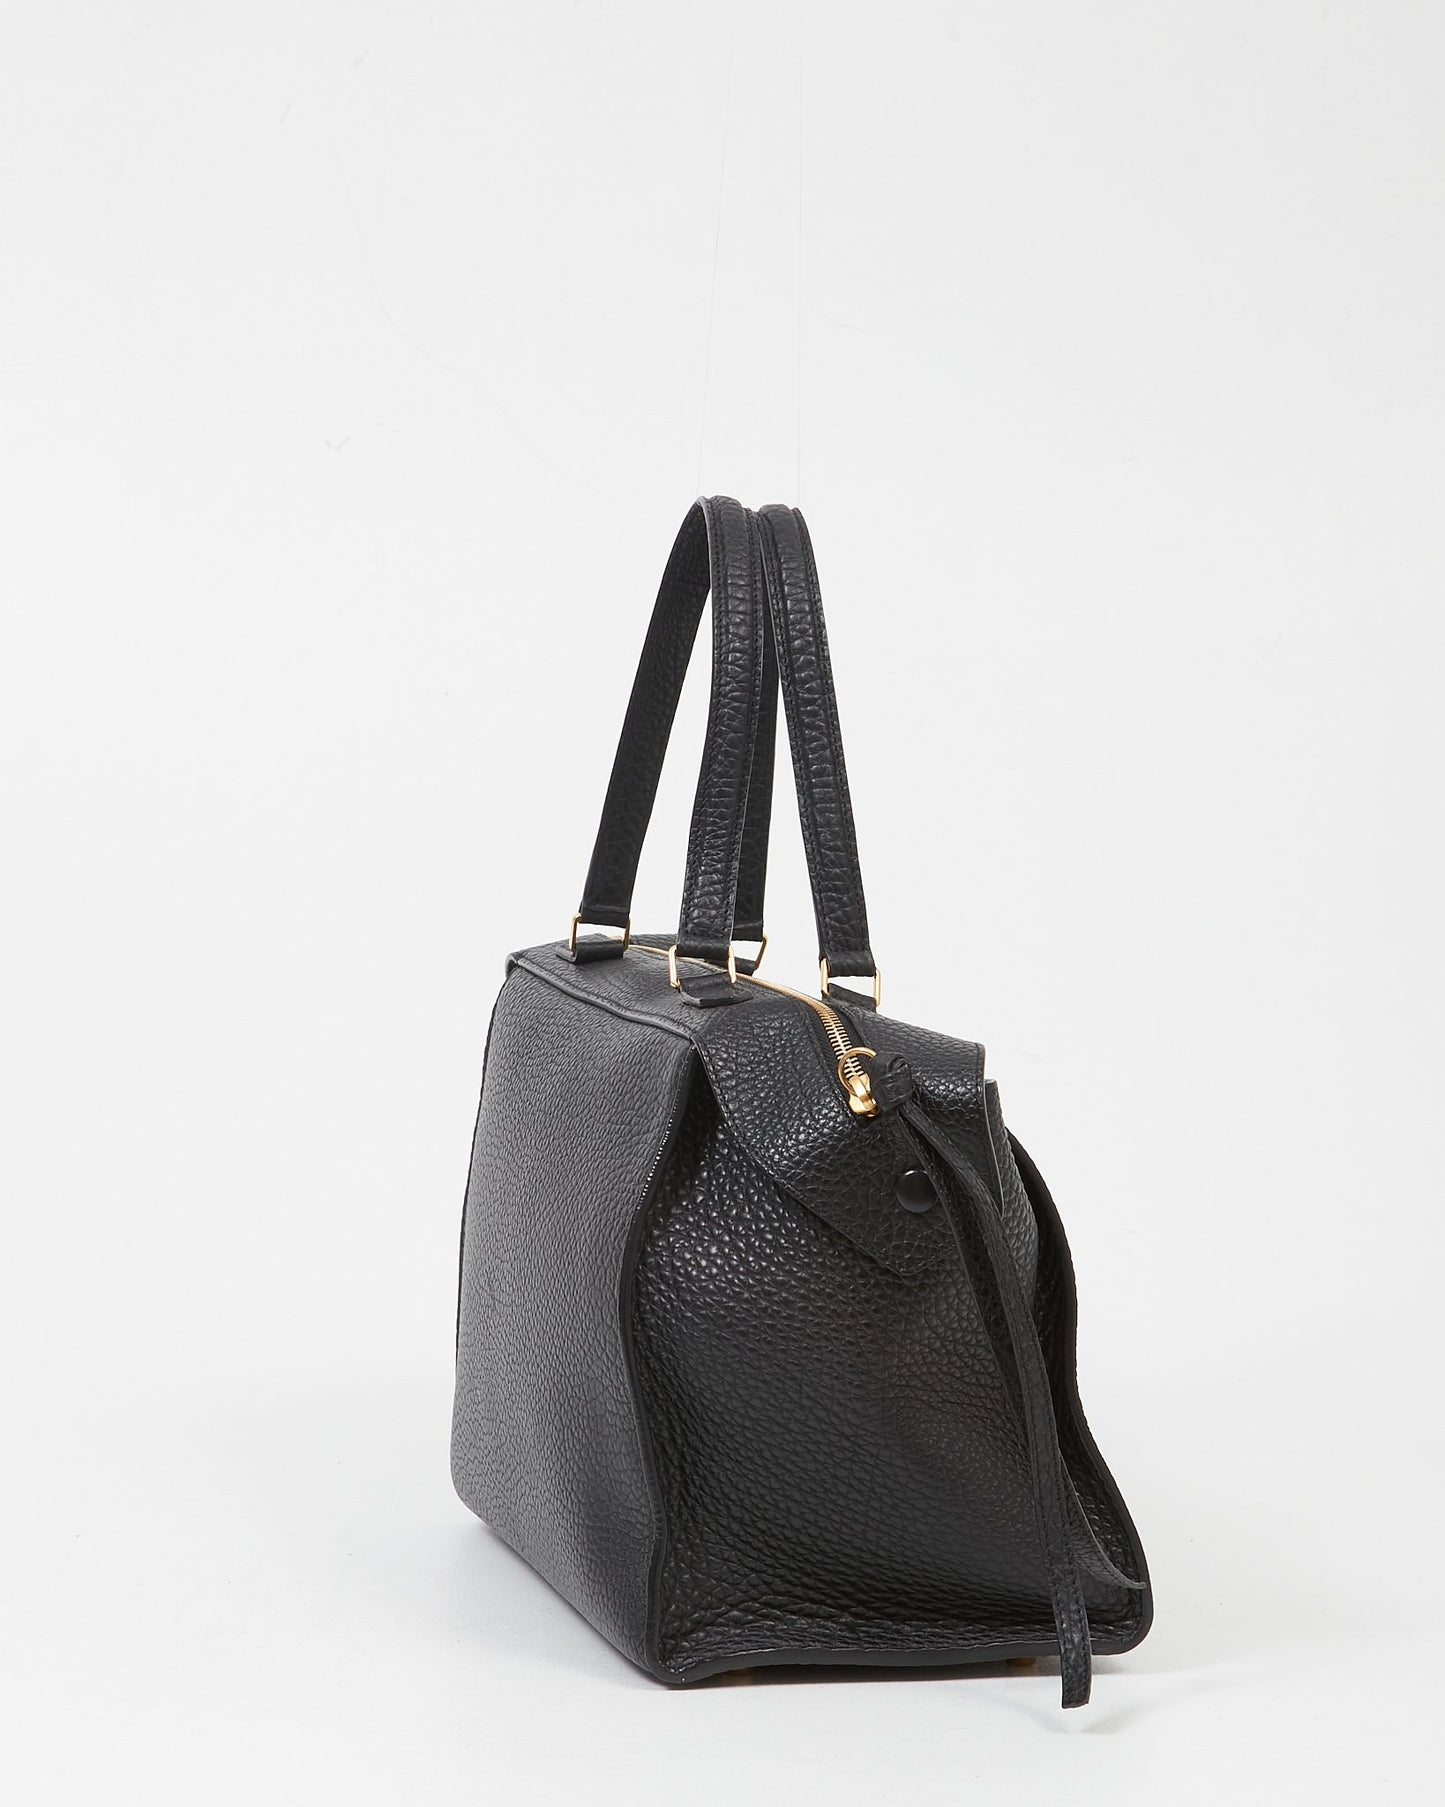 Celine Black Leather Pebbled Ring Top Handle Bag